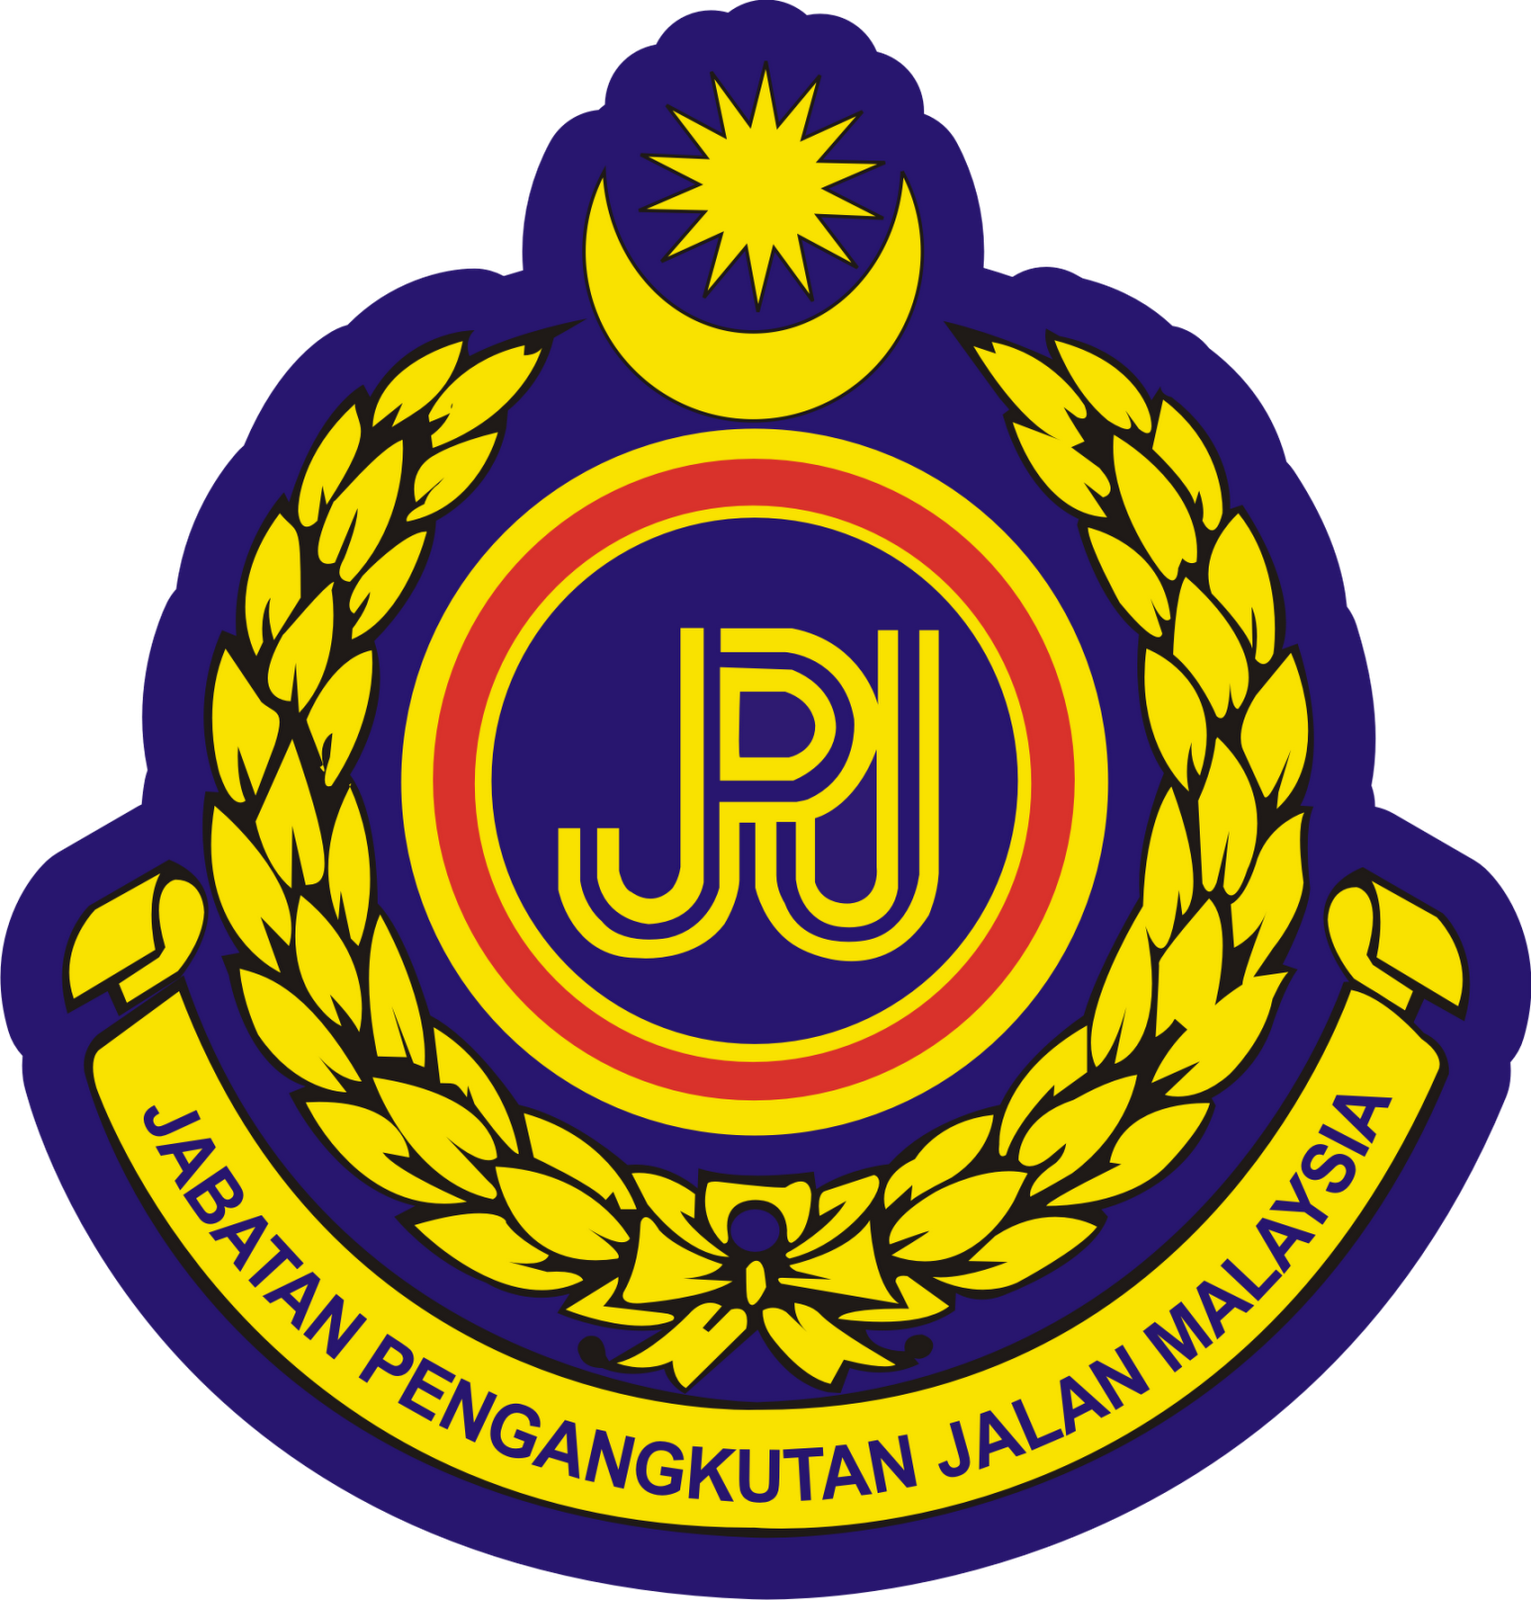 Jabatan Pengangkutan Jalan Malaysia (JPJ)